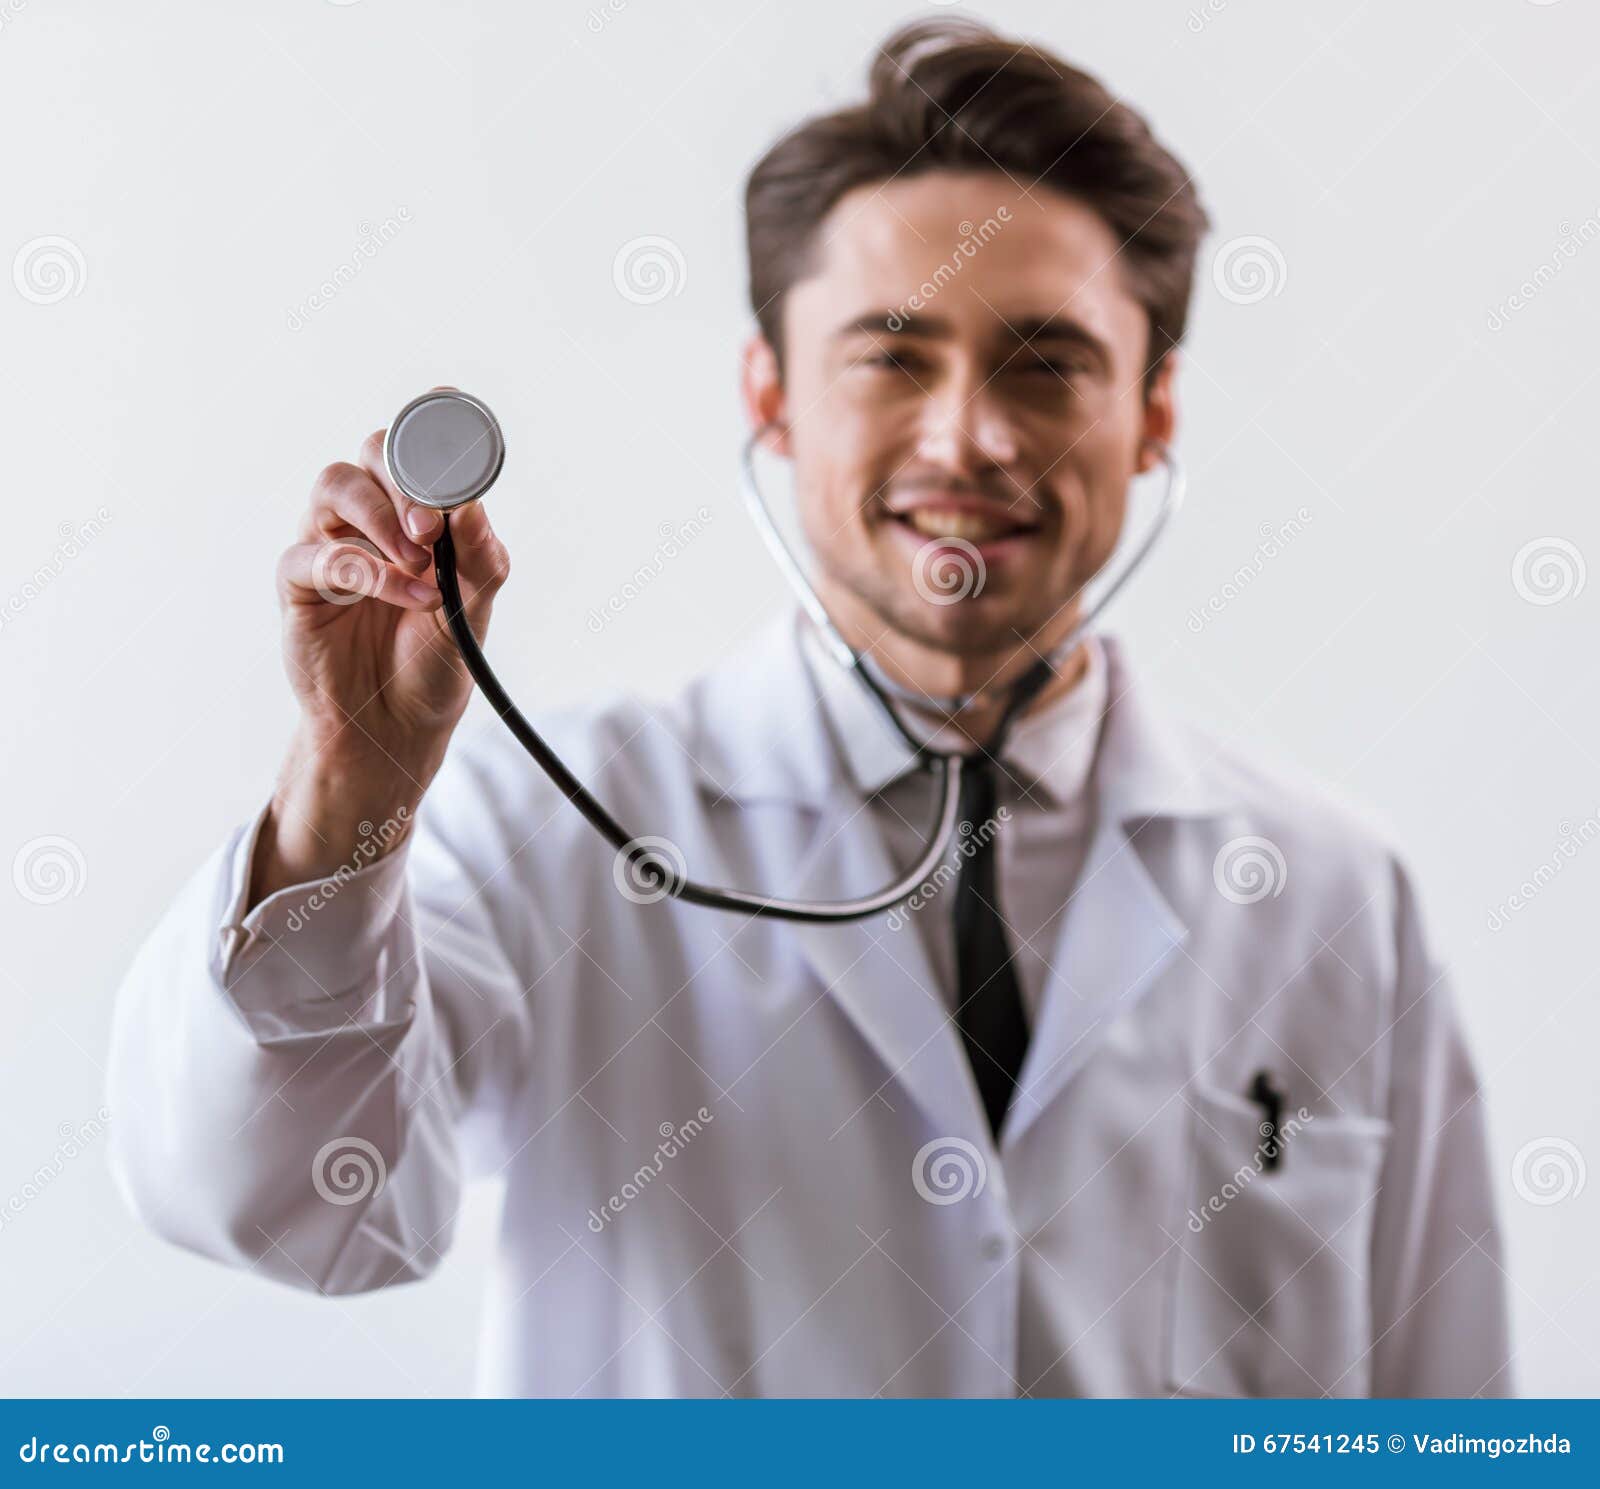 Stattlicher junger Doktor. Hübscher junger Doktor im weißen Kleid und im Stethoskop lächelnd, Kamera betrachtend und Stethoskop zeigend, konzentrieren sich an Hand, auf weißen Hintergrund